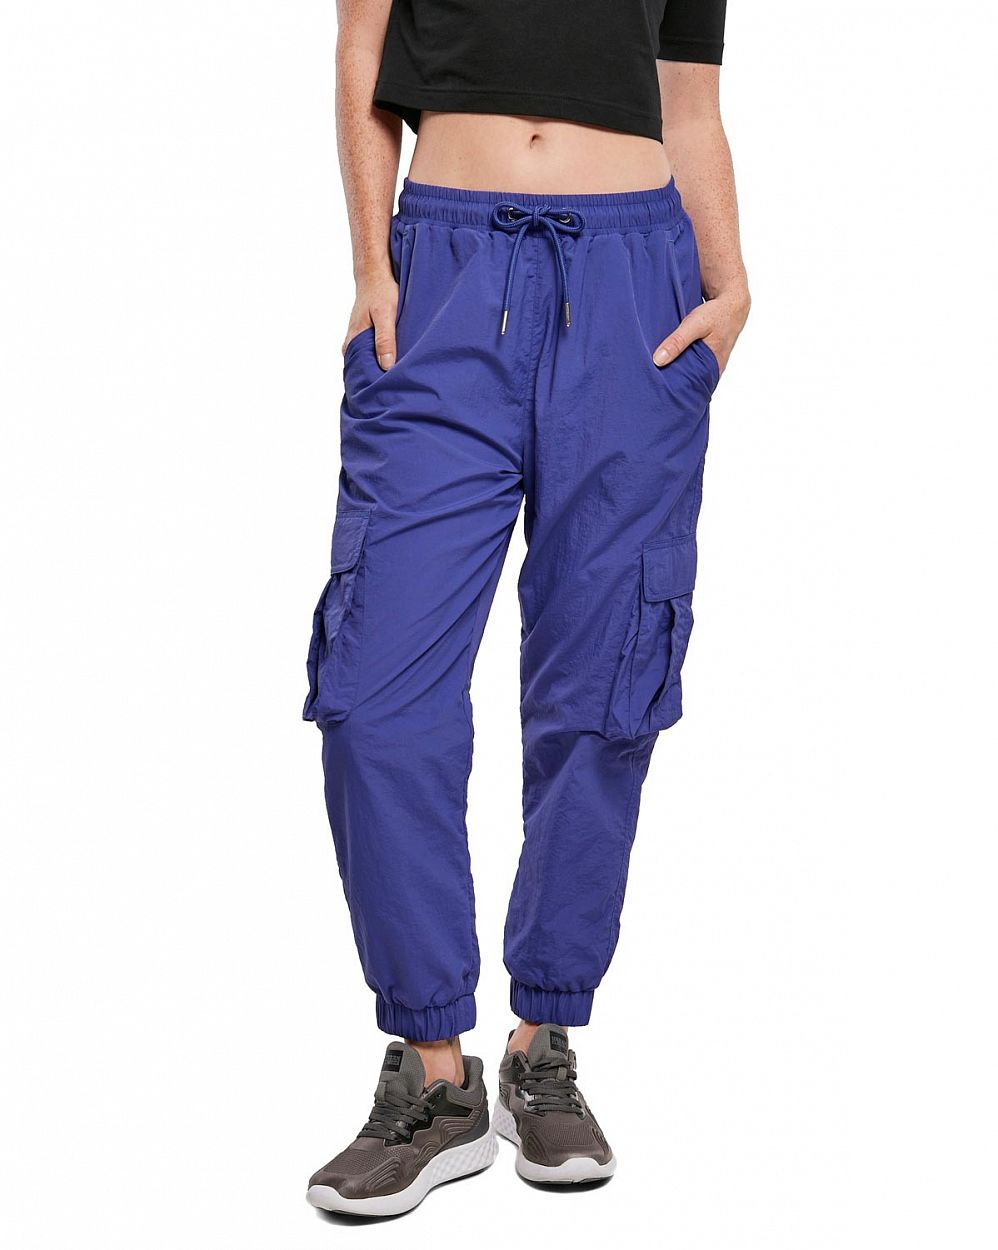 Джоггеры женские водоотталкивающие карго с карманами Urban Classics Bluepurple отзывы